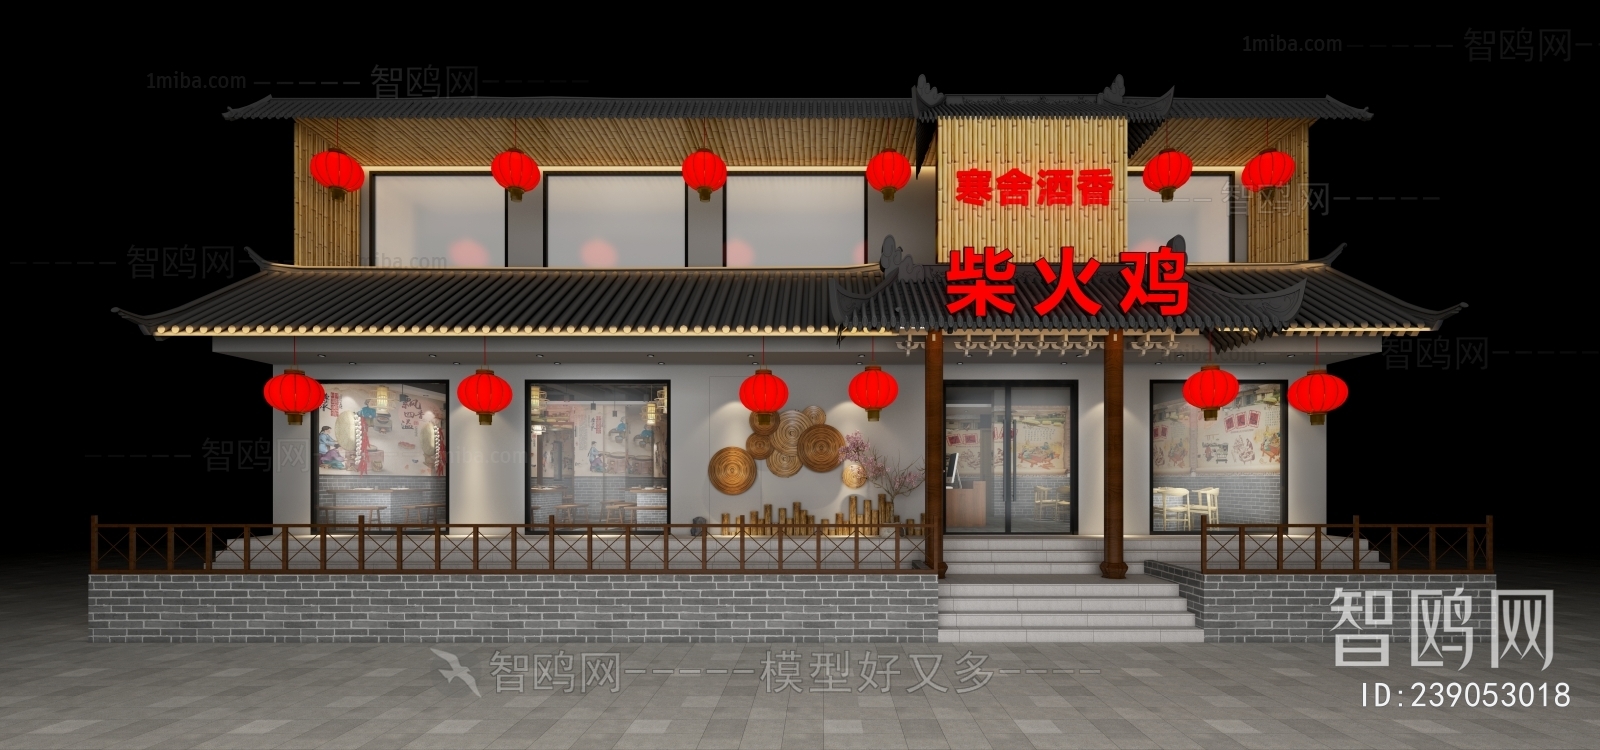 多场景-新中式中餐厅门面门头